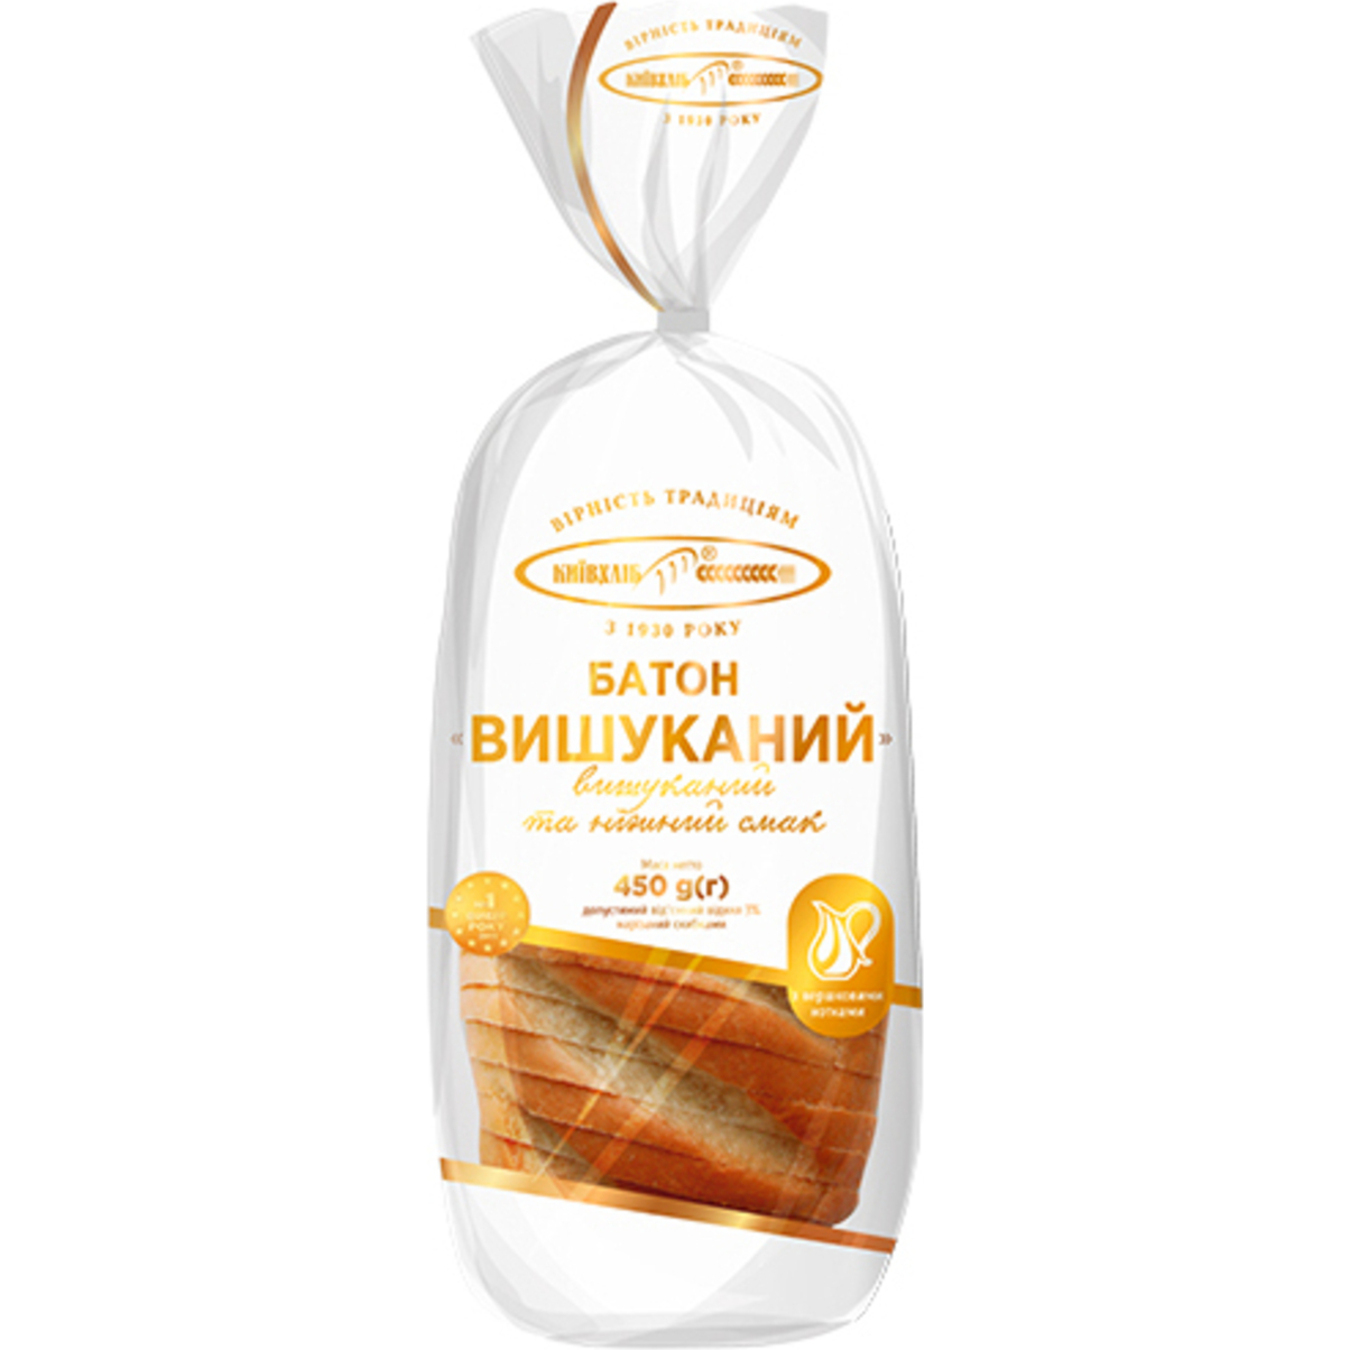 Baton Kyivkhlib Elegant sliced 450g